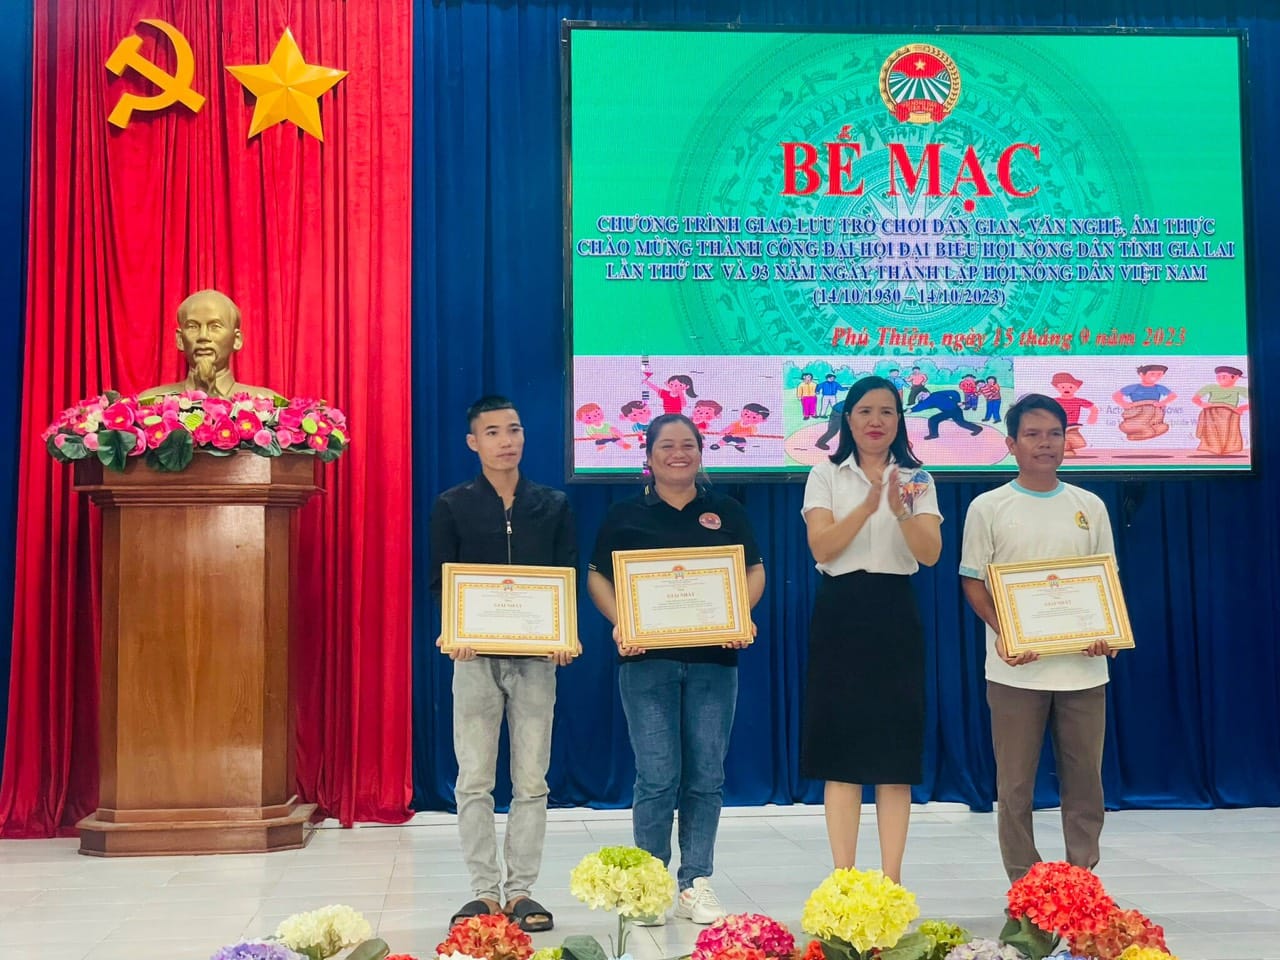 Article Huyện Phú Thiện: sôi nổi các hoạt động chào mừng thành công đại hội nông dân cấp tỉnh và ngày thành lập hội nông dân Việt Nam